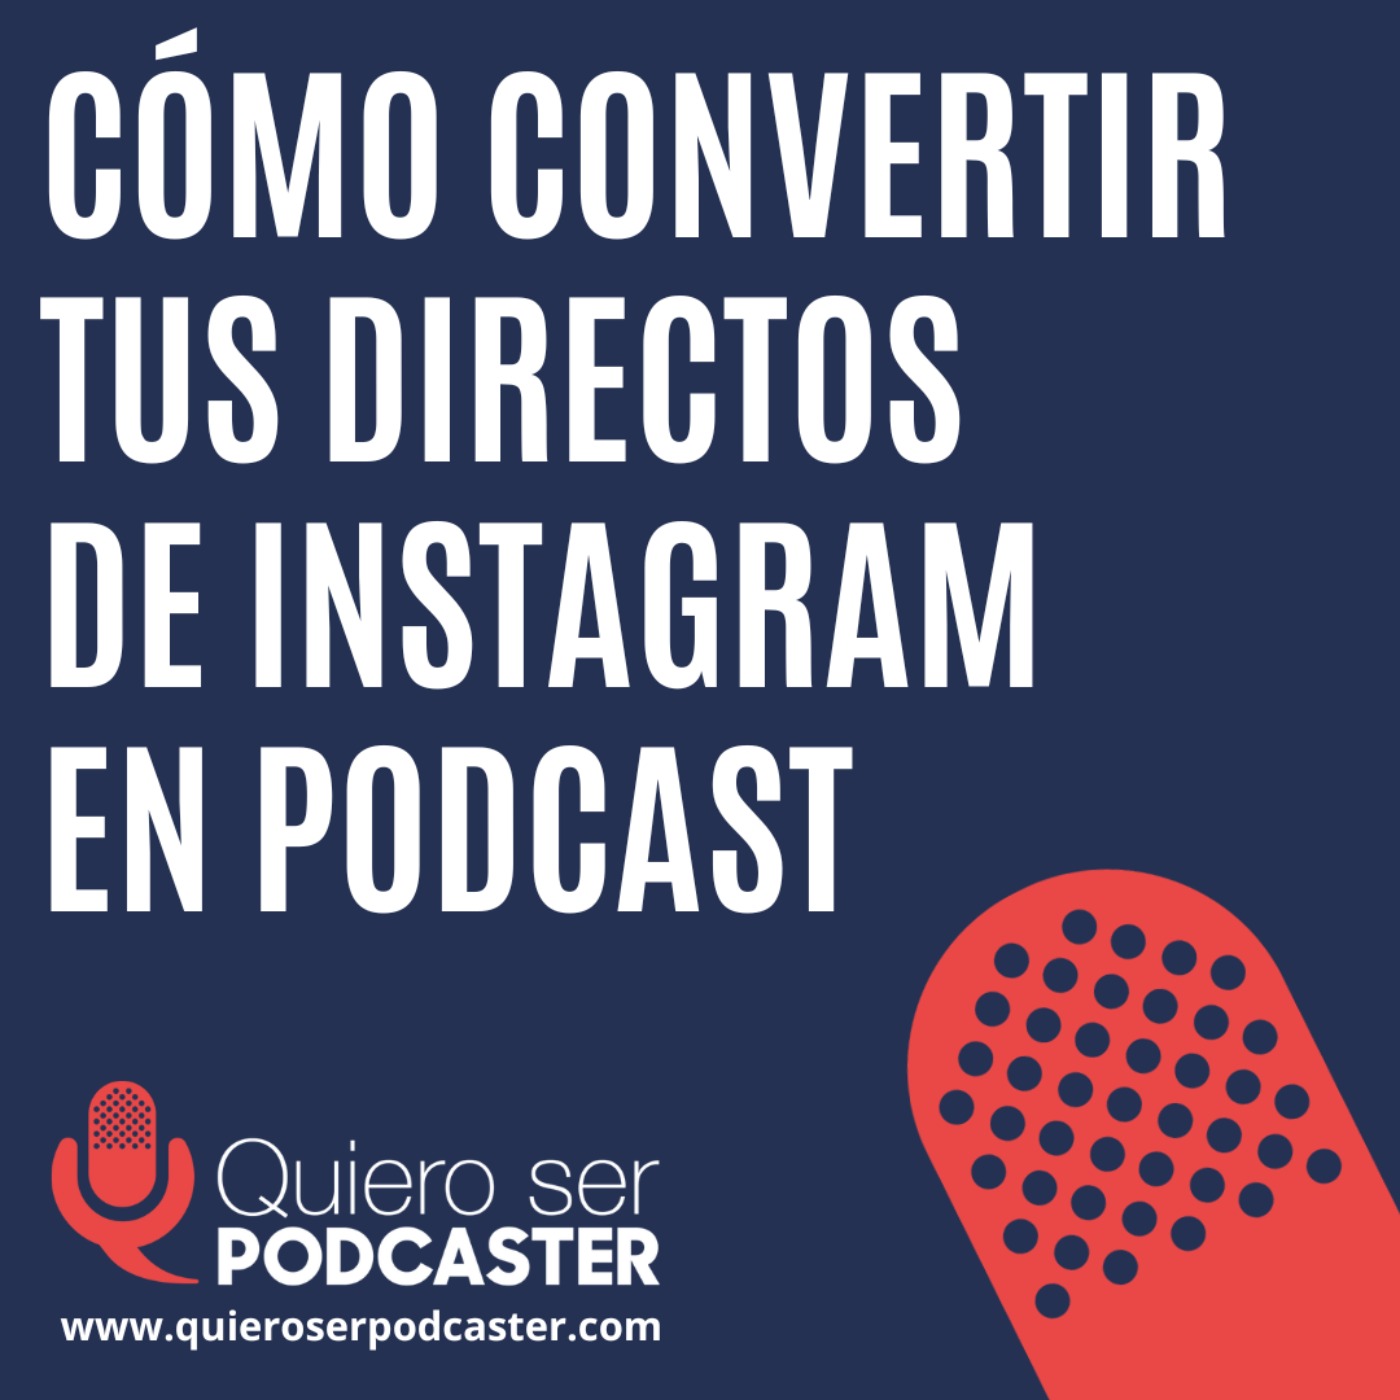 Cómo convertir tus directos de instagram en podcast